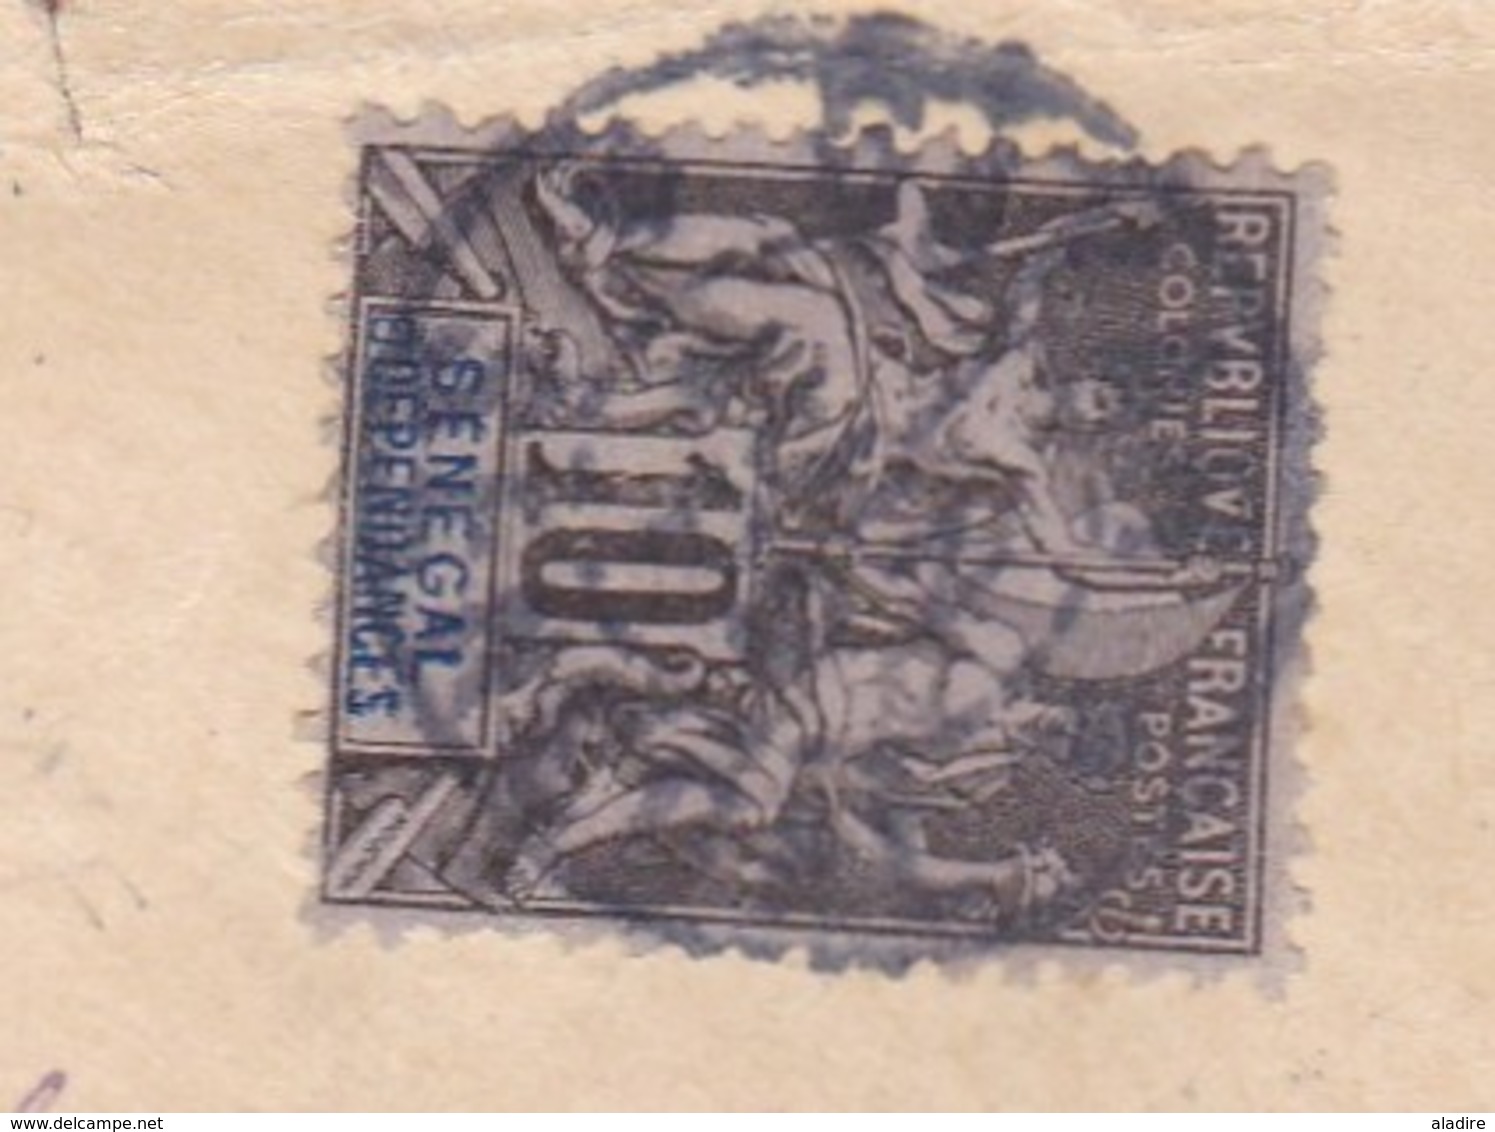 1899 - Enveloppe De Dakar, Sénégal Vers Cramans, Par Arc Senans, Doubs - Affrt 15 C Type Groupe 10 C + 5 C - Cad Arrivée - Briefe U. Dokumente